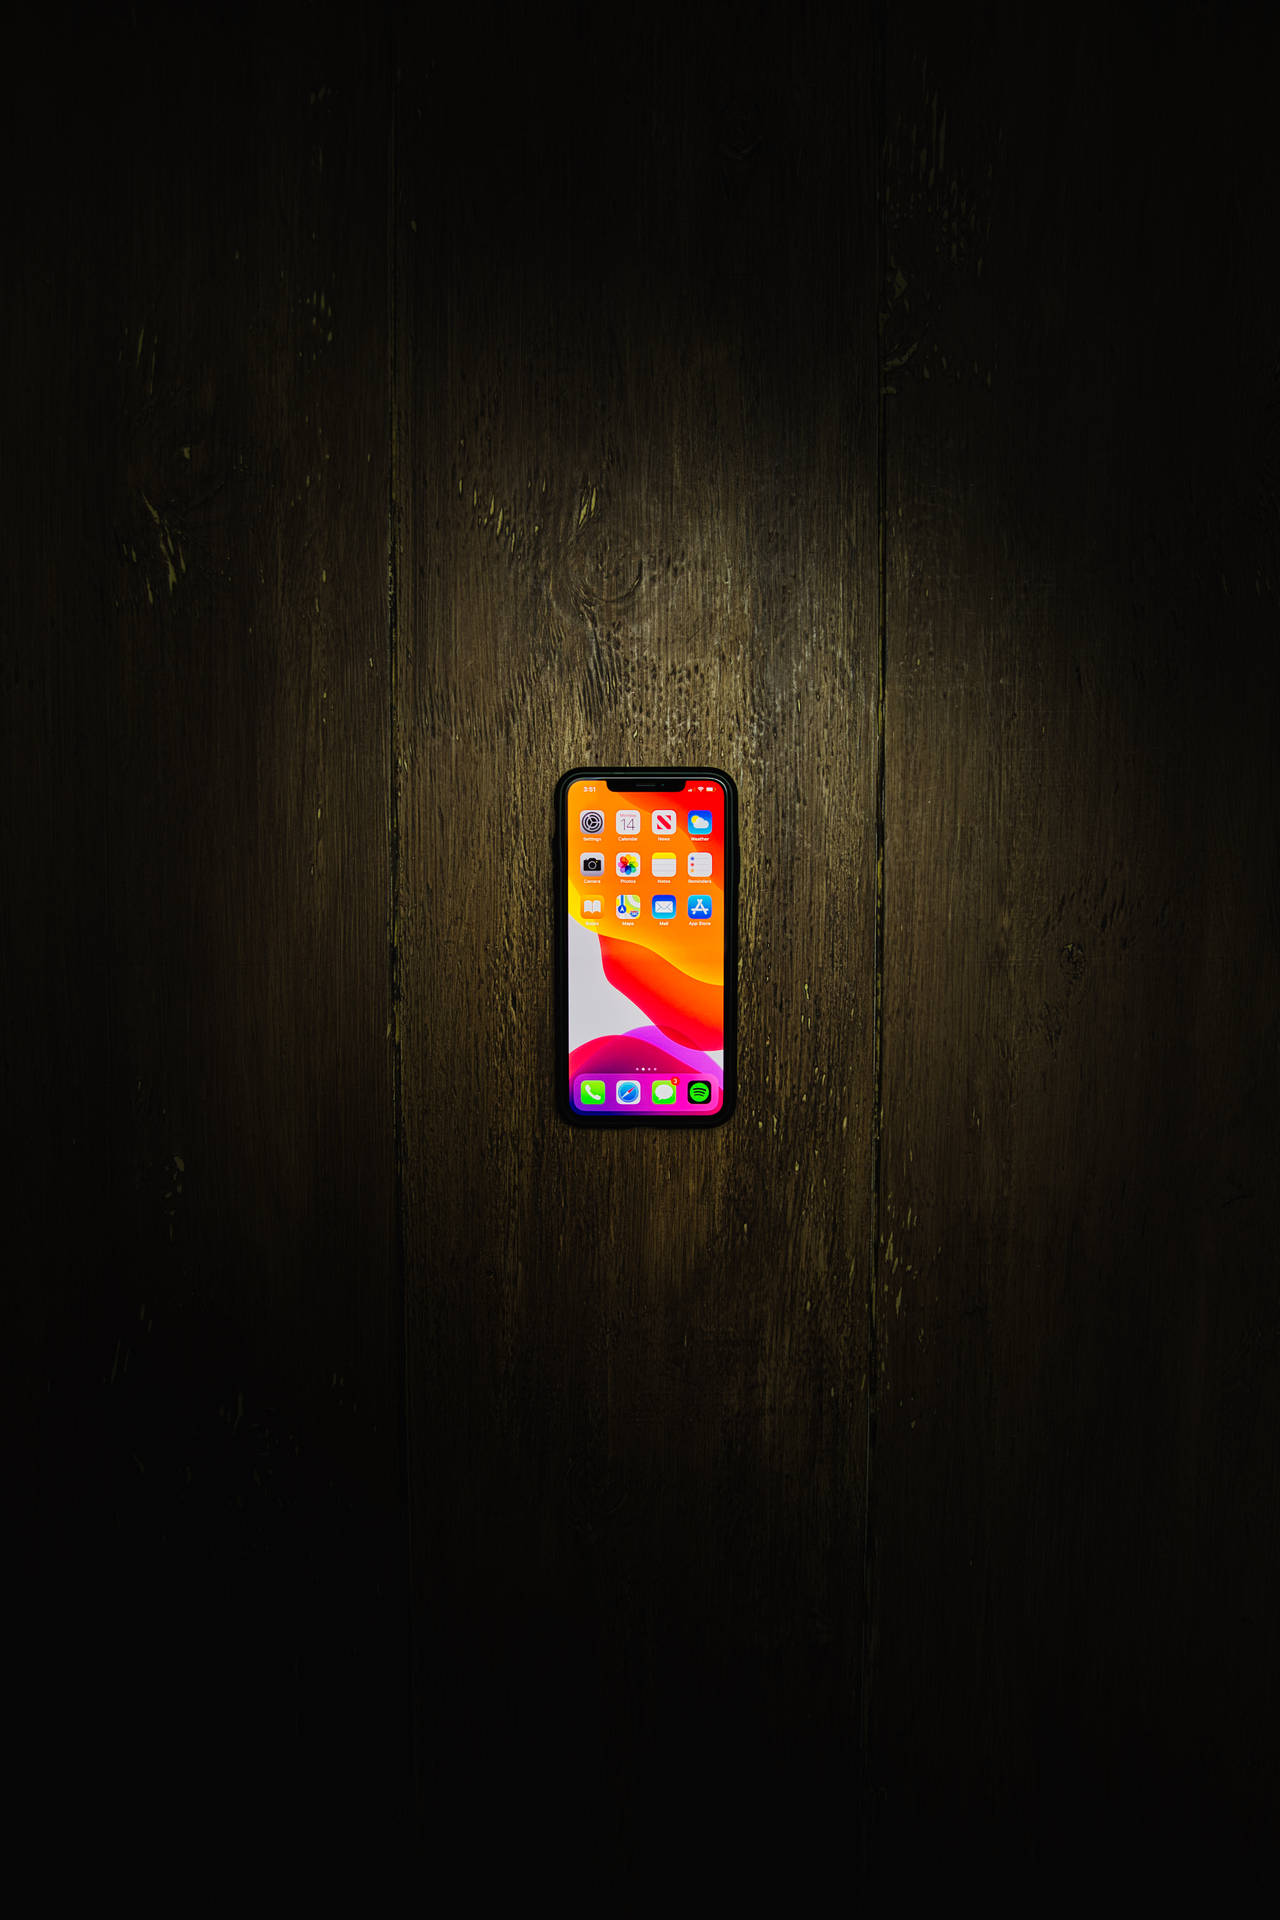 Iphone Xs Max On Wooden Floor Wallpaper